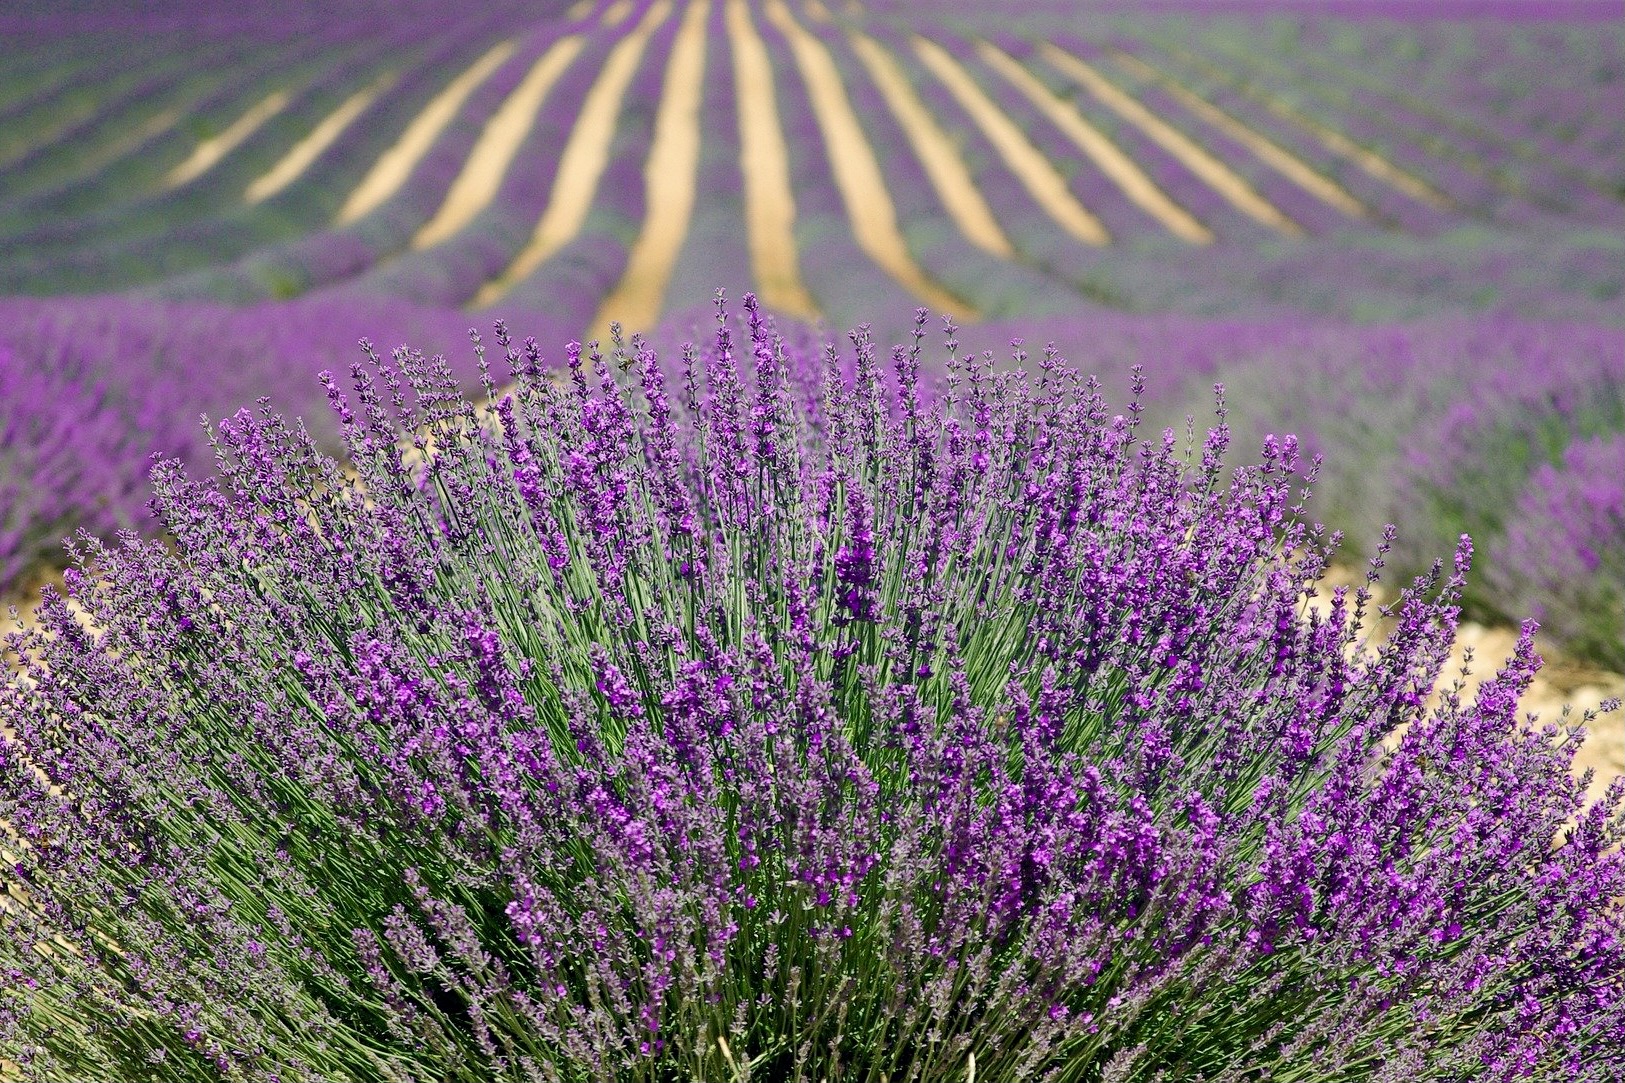 Lavendelfelder sind für die Provence bekannt